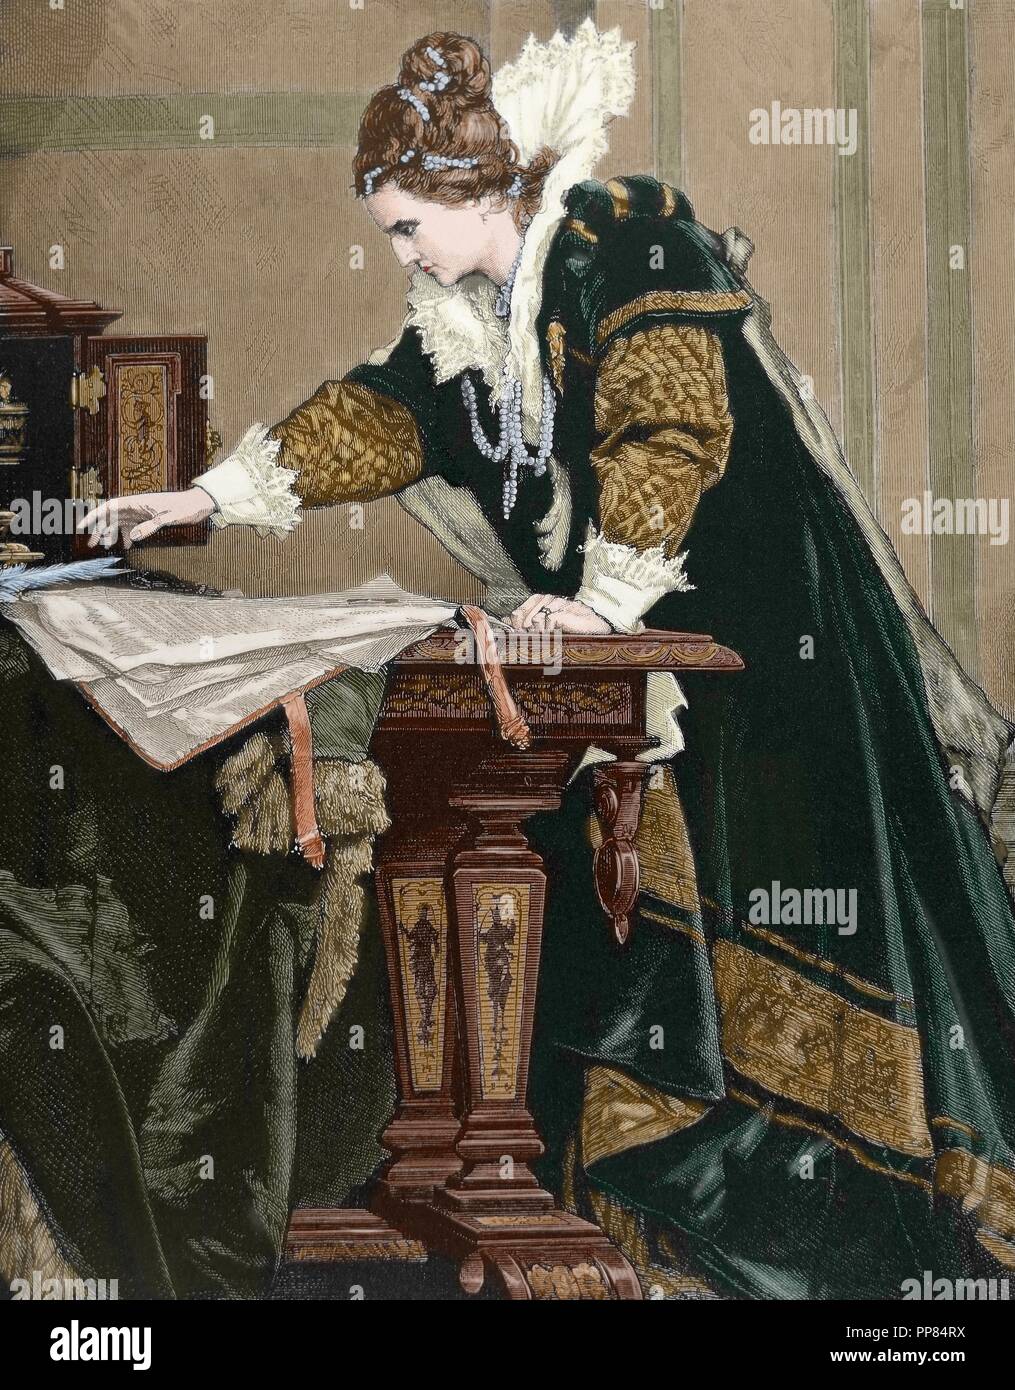 (Elizabeth I), Reine de Maalouf l'Angleterre et l'Irlande décrète la mort de Marie Stuart, reine d'Écosse. Gravure de Thiele. De couleur. Banque D'Images